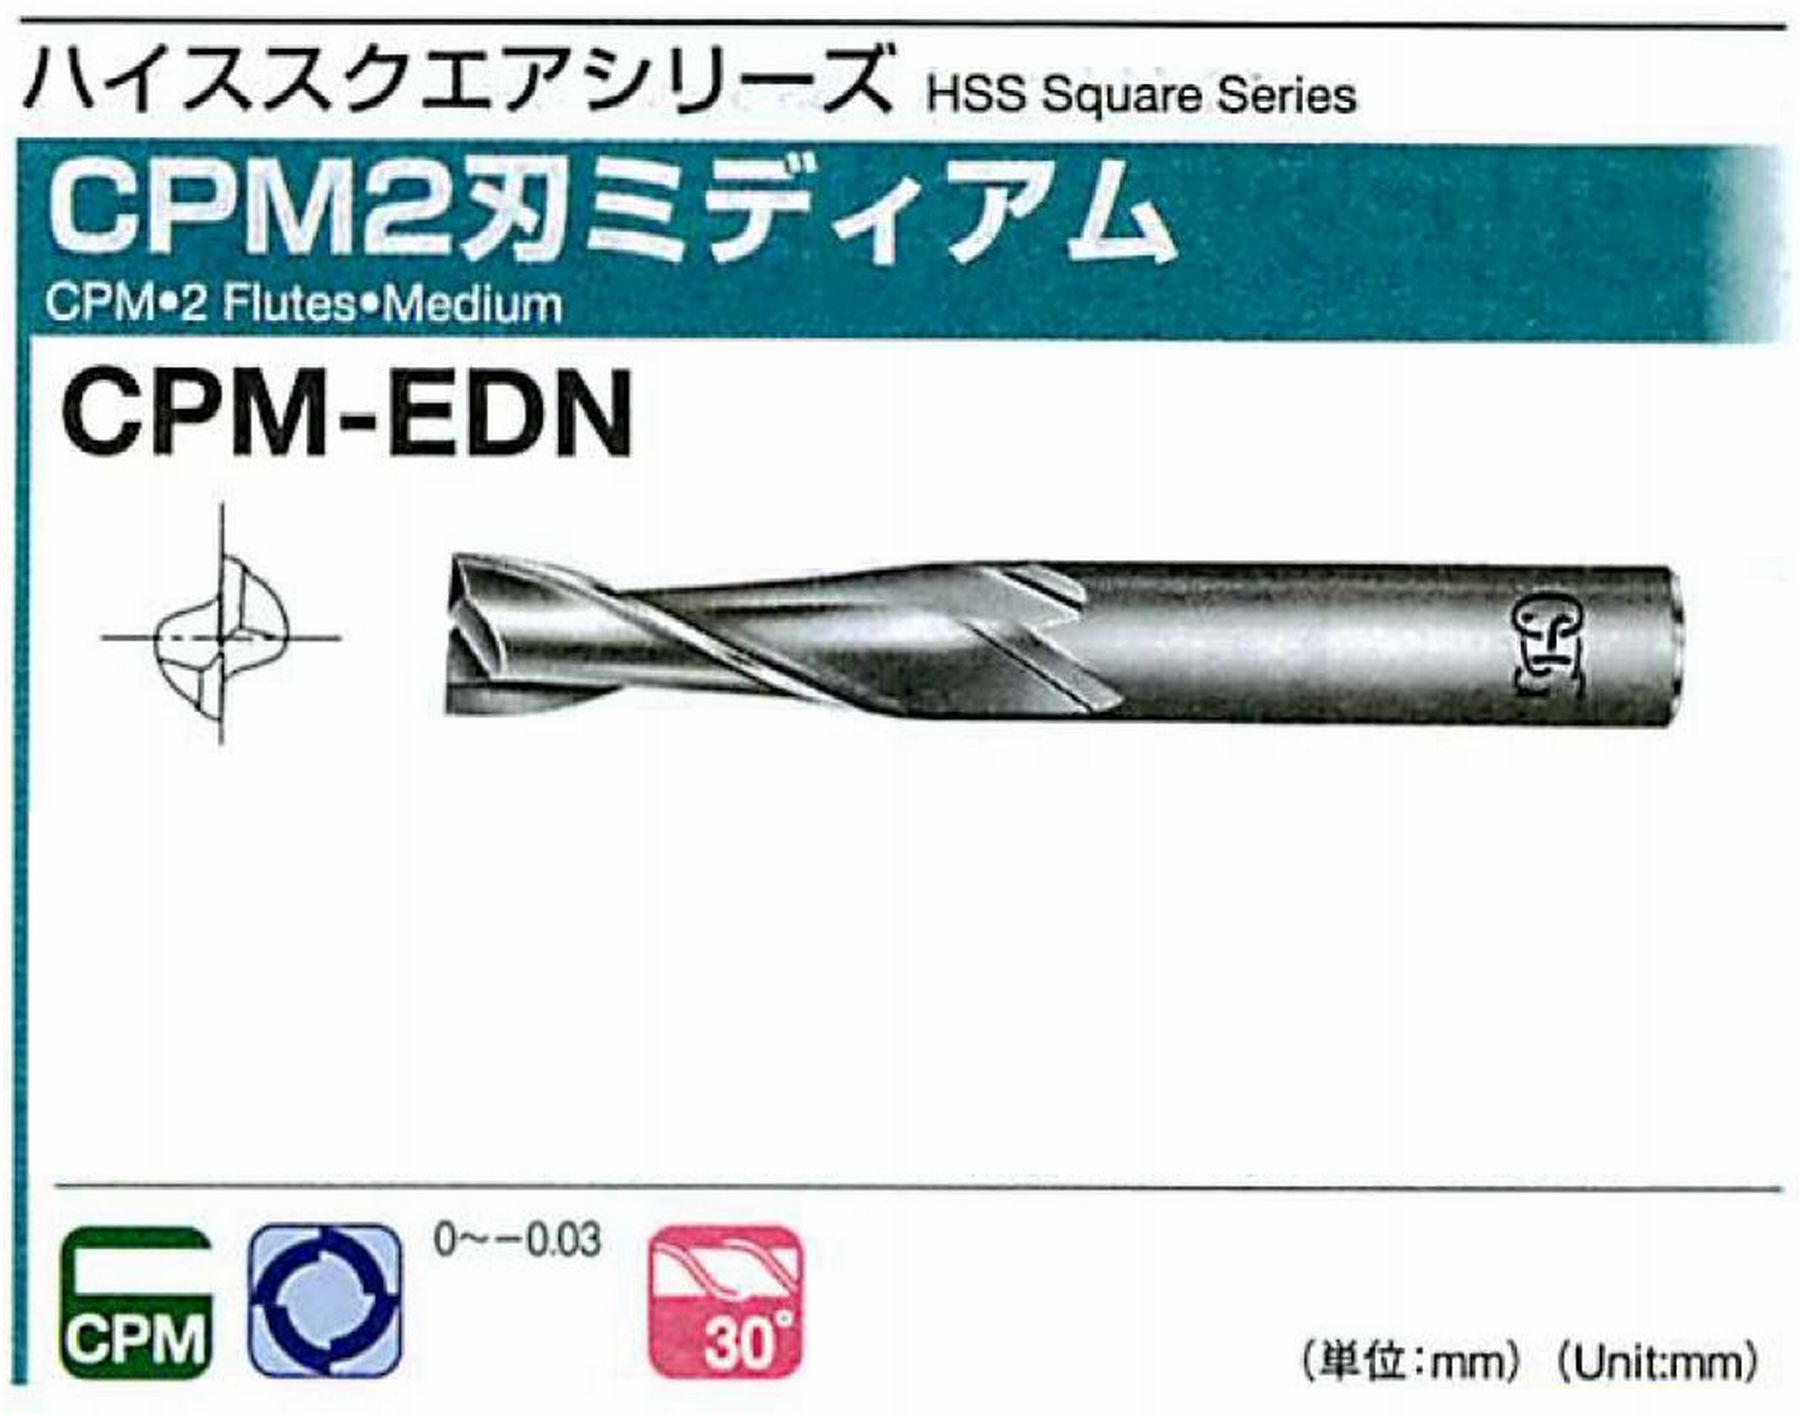 オーエスジー/OSG CPM2刃 ミディアム CPM-EDN 外径18 全長95 刃長40 シャンク径16mm